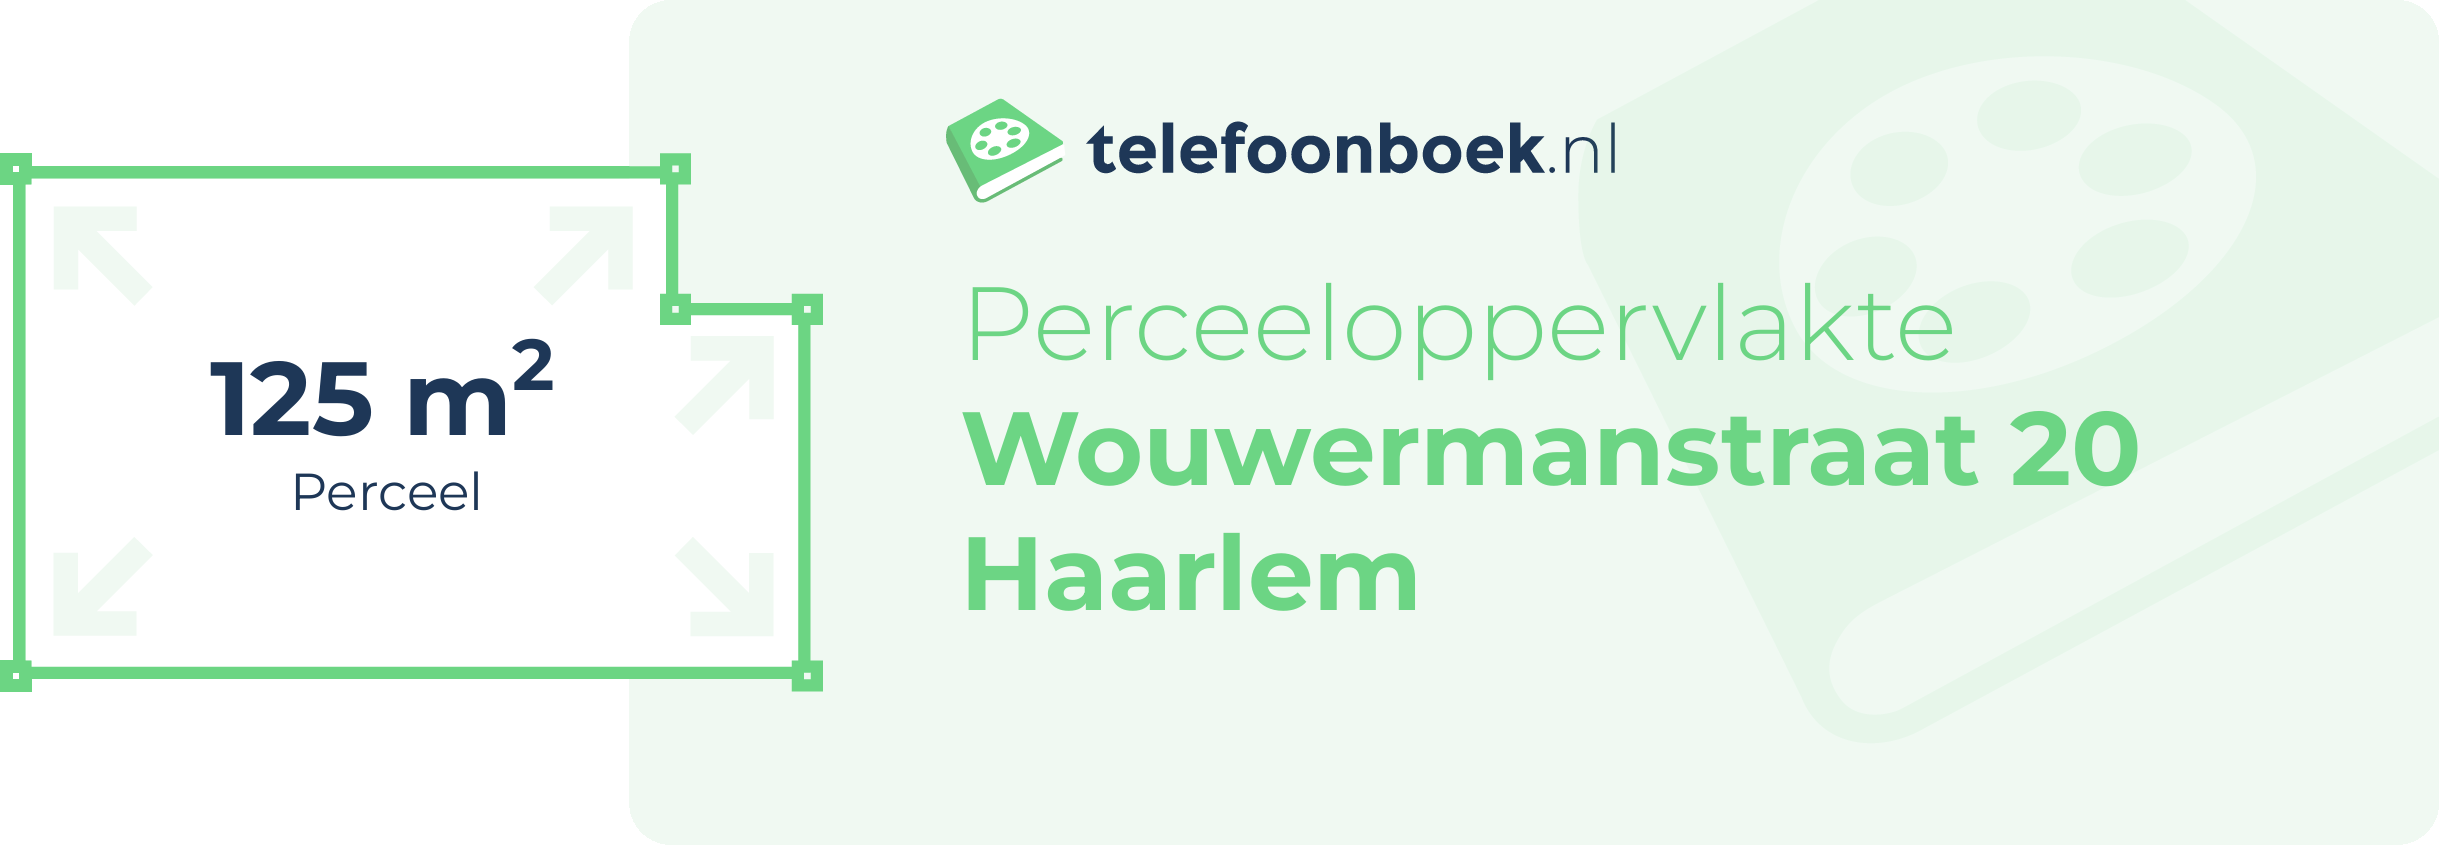 Perceeloppervlakte Wouwermanstraat 20 Haarlem